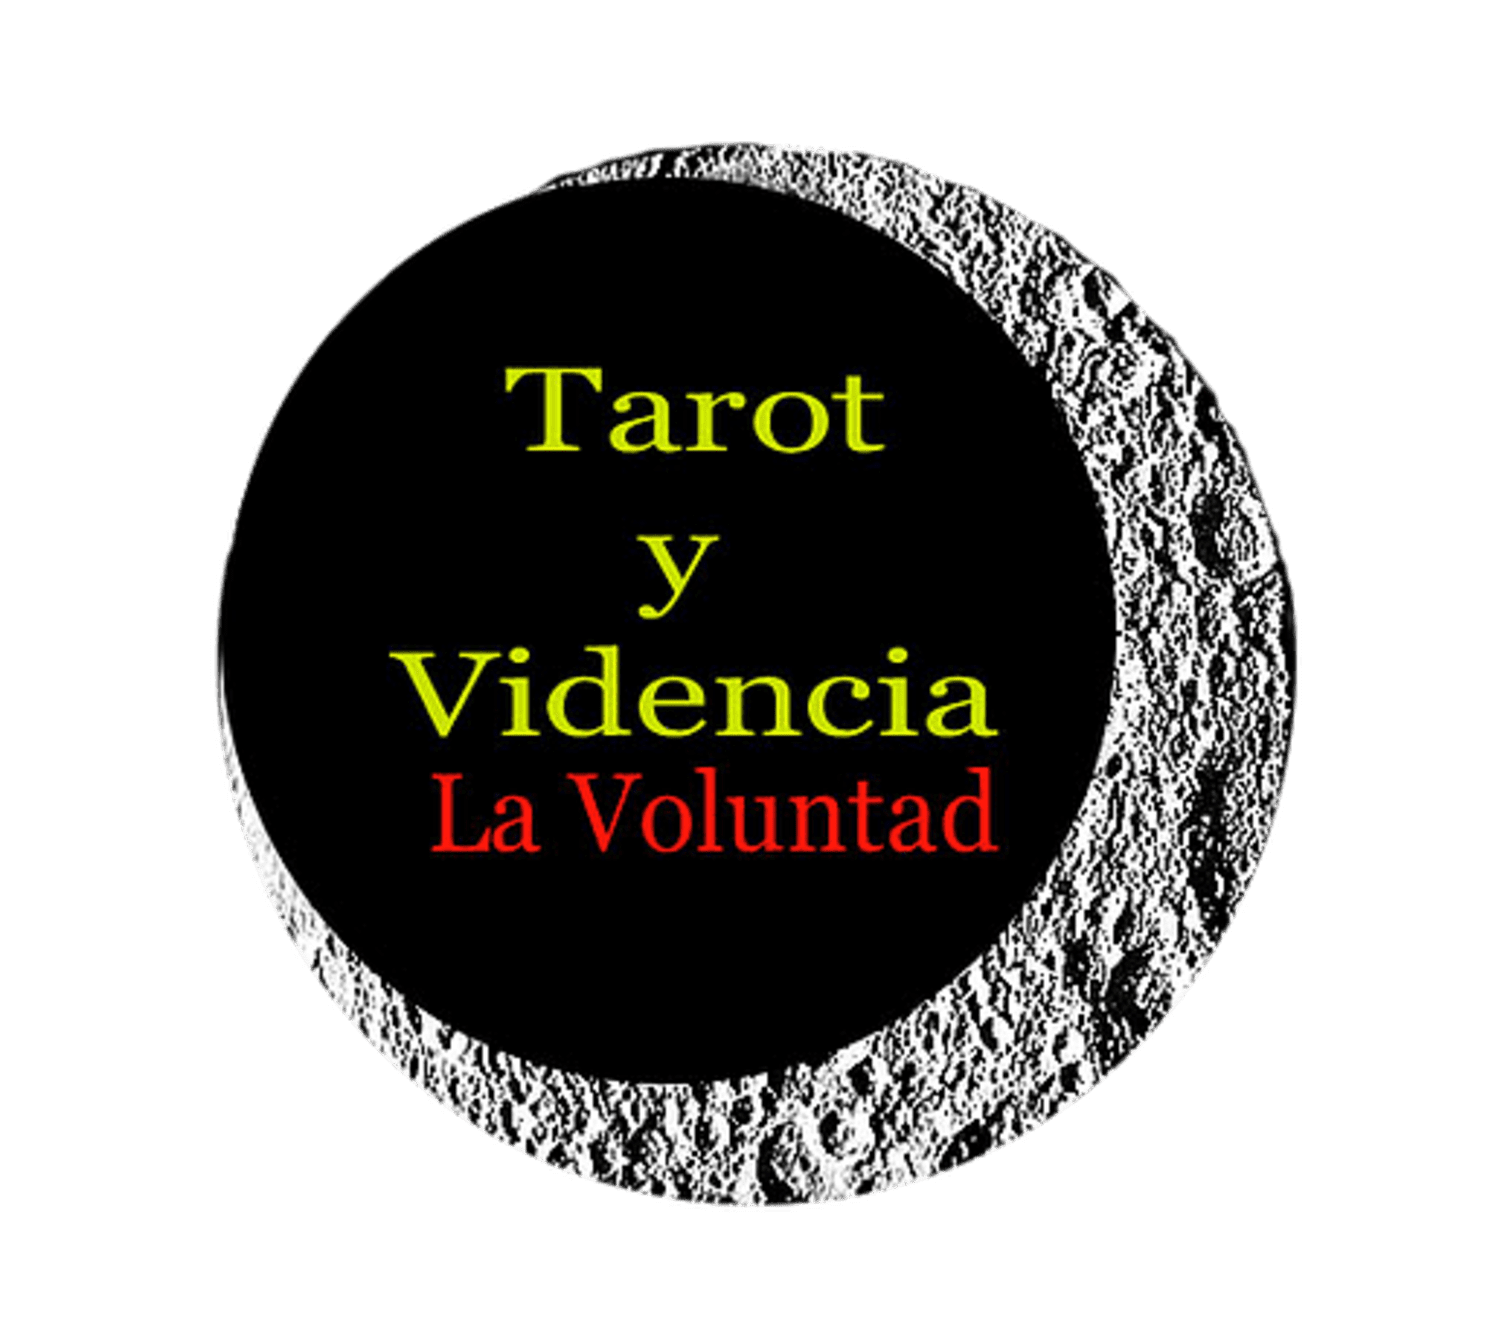 Tarot y videncía La Voluntad